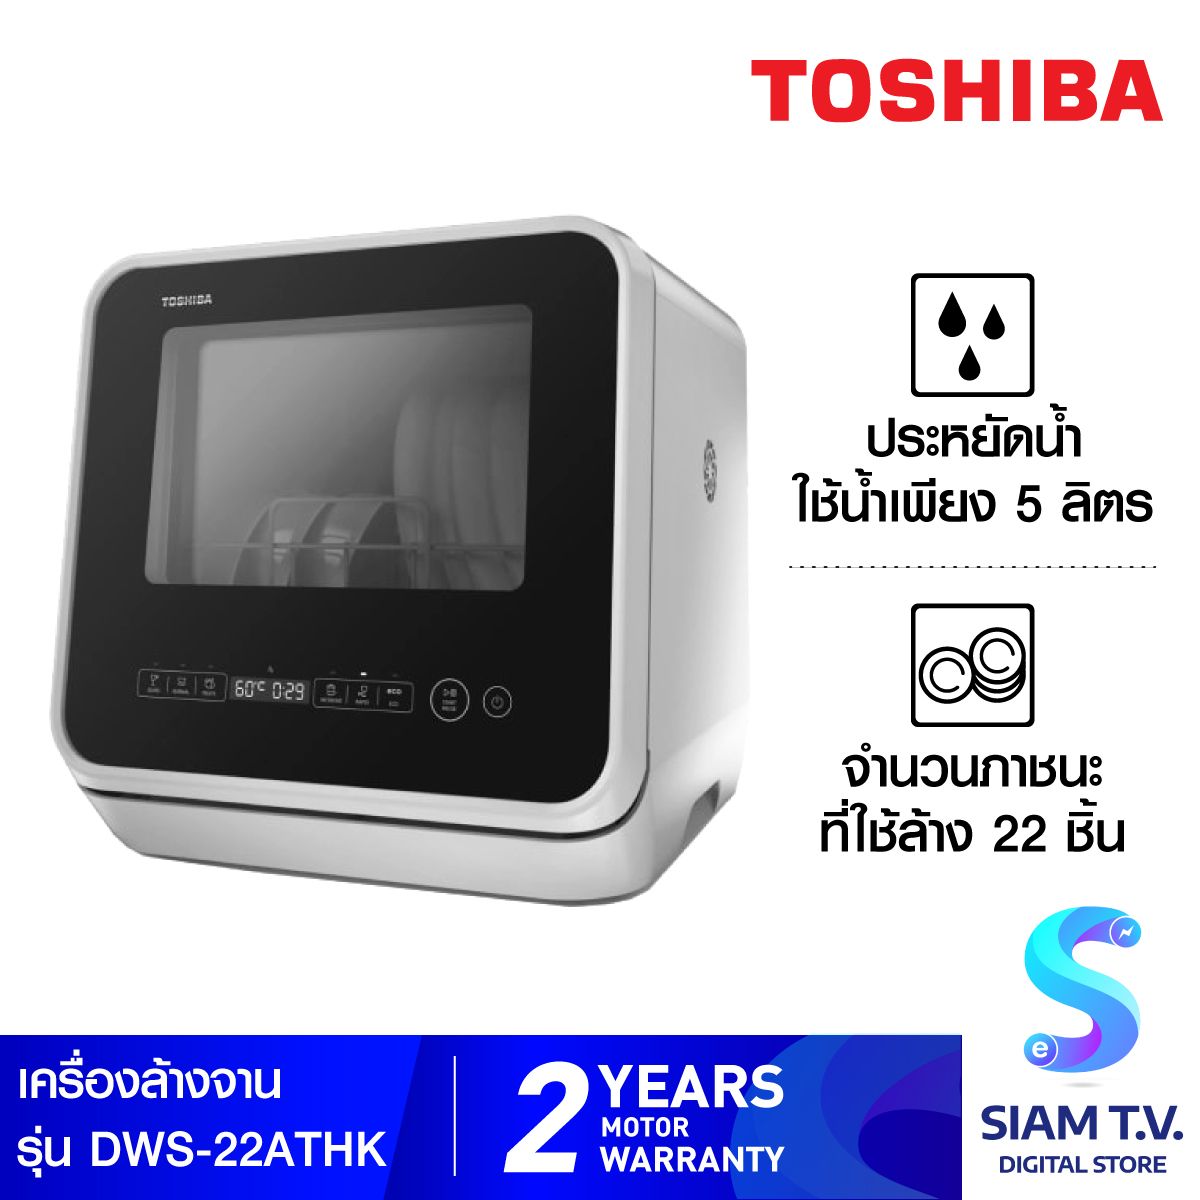 Toshiba เครื่องล้างจาน Toshiba รุ่น DWS-22ATH(K) ประหยัดกว่าล้างด้วยมือ 7 เท่า โดยใช้น้ำเพียง 5 ลิตร